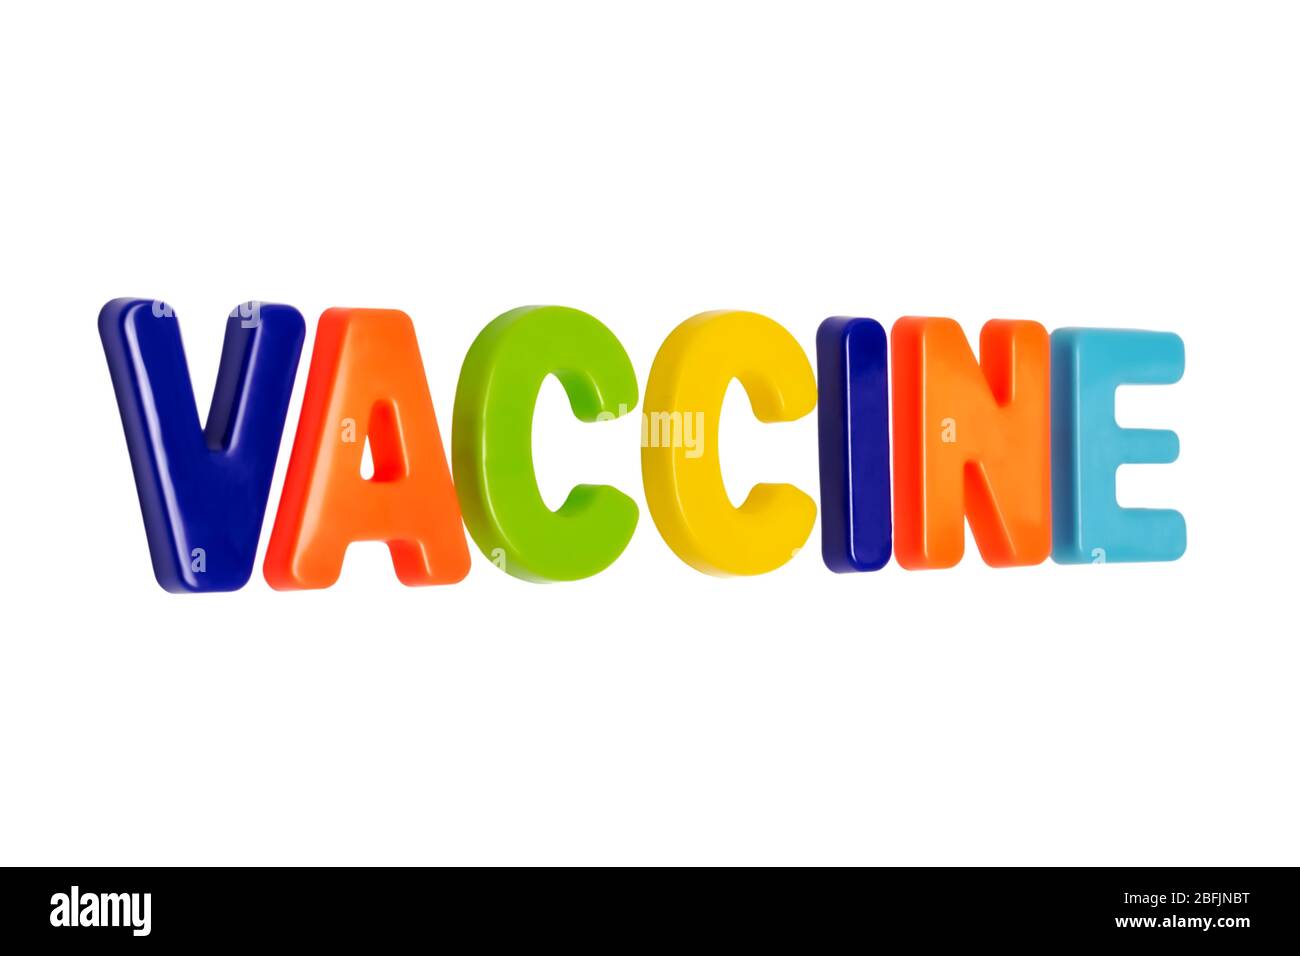 Coronavirus-Pandemie, TEXTINDIMPFSTOFF auf weißem Hintergrund. Ein Impfstoff zur Behandlung einer weltweiten Pandemie. COVID-19 ist der offizielle neue Name für SARS-CoV-2 coron Stockfoto